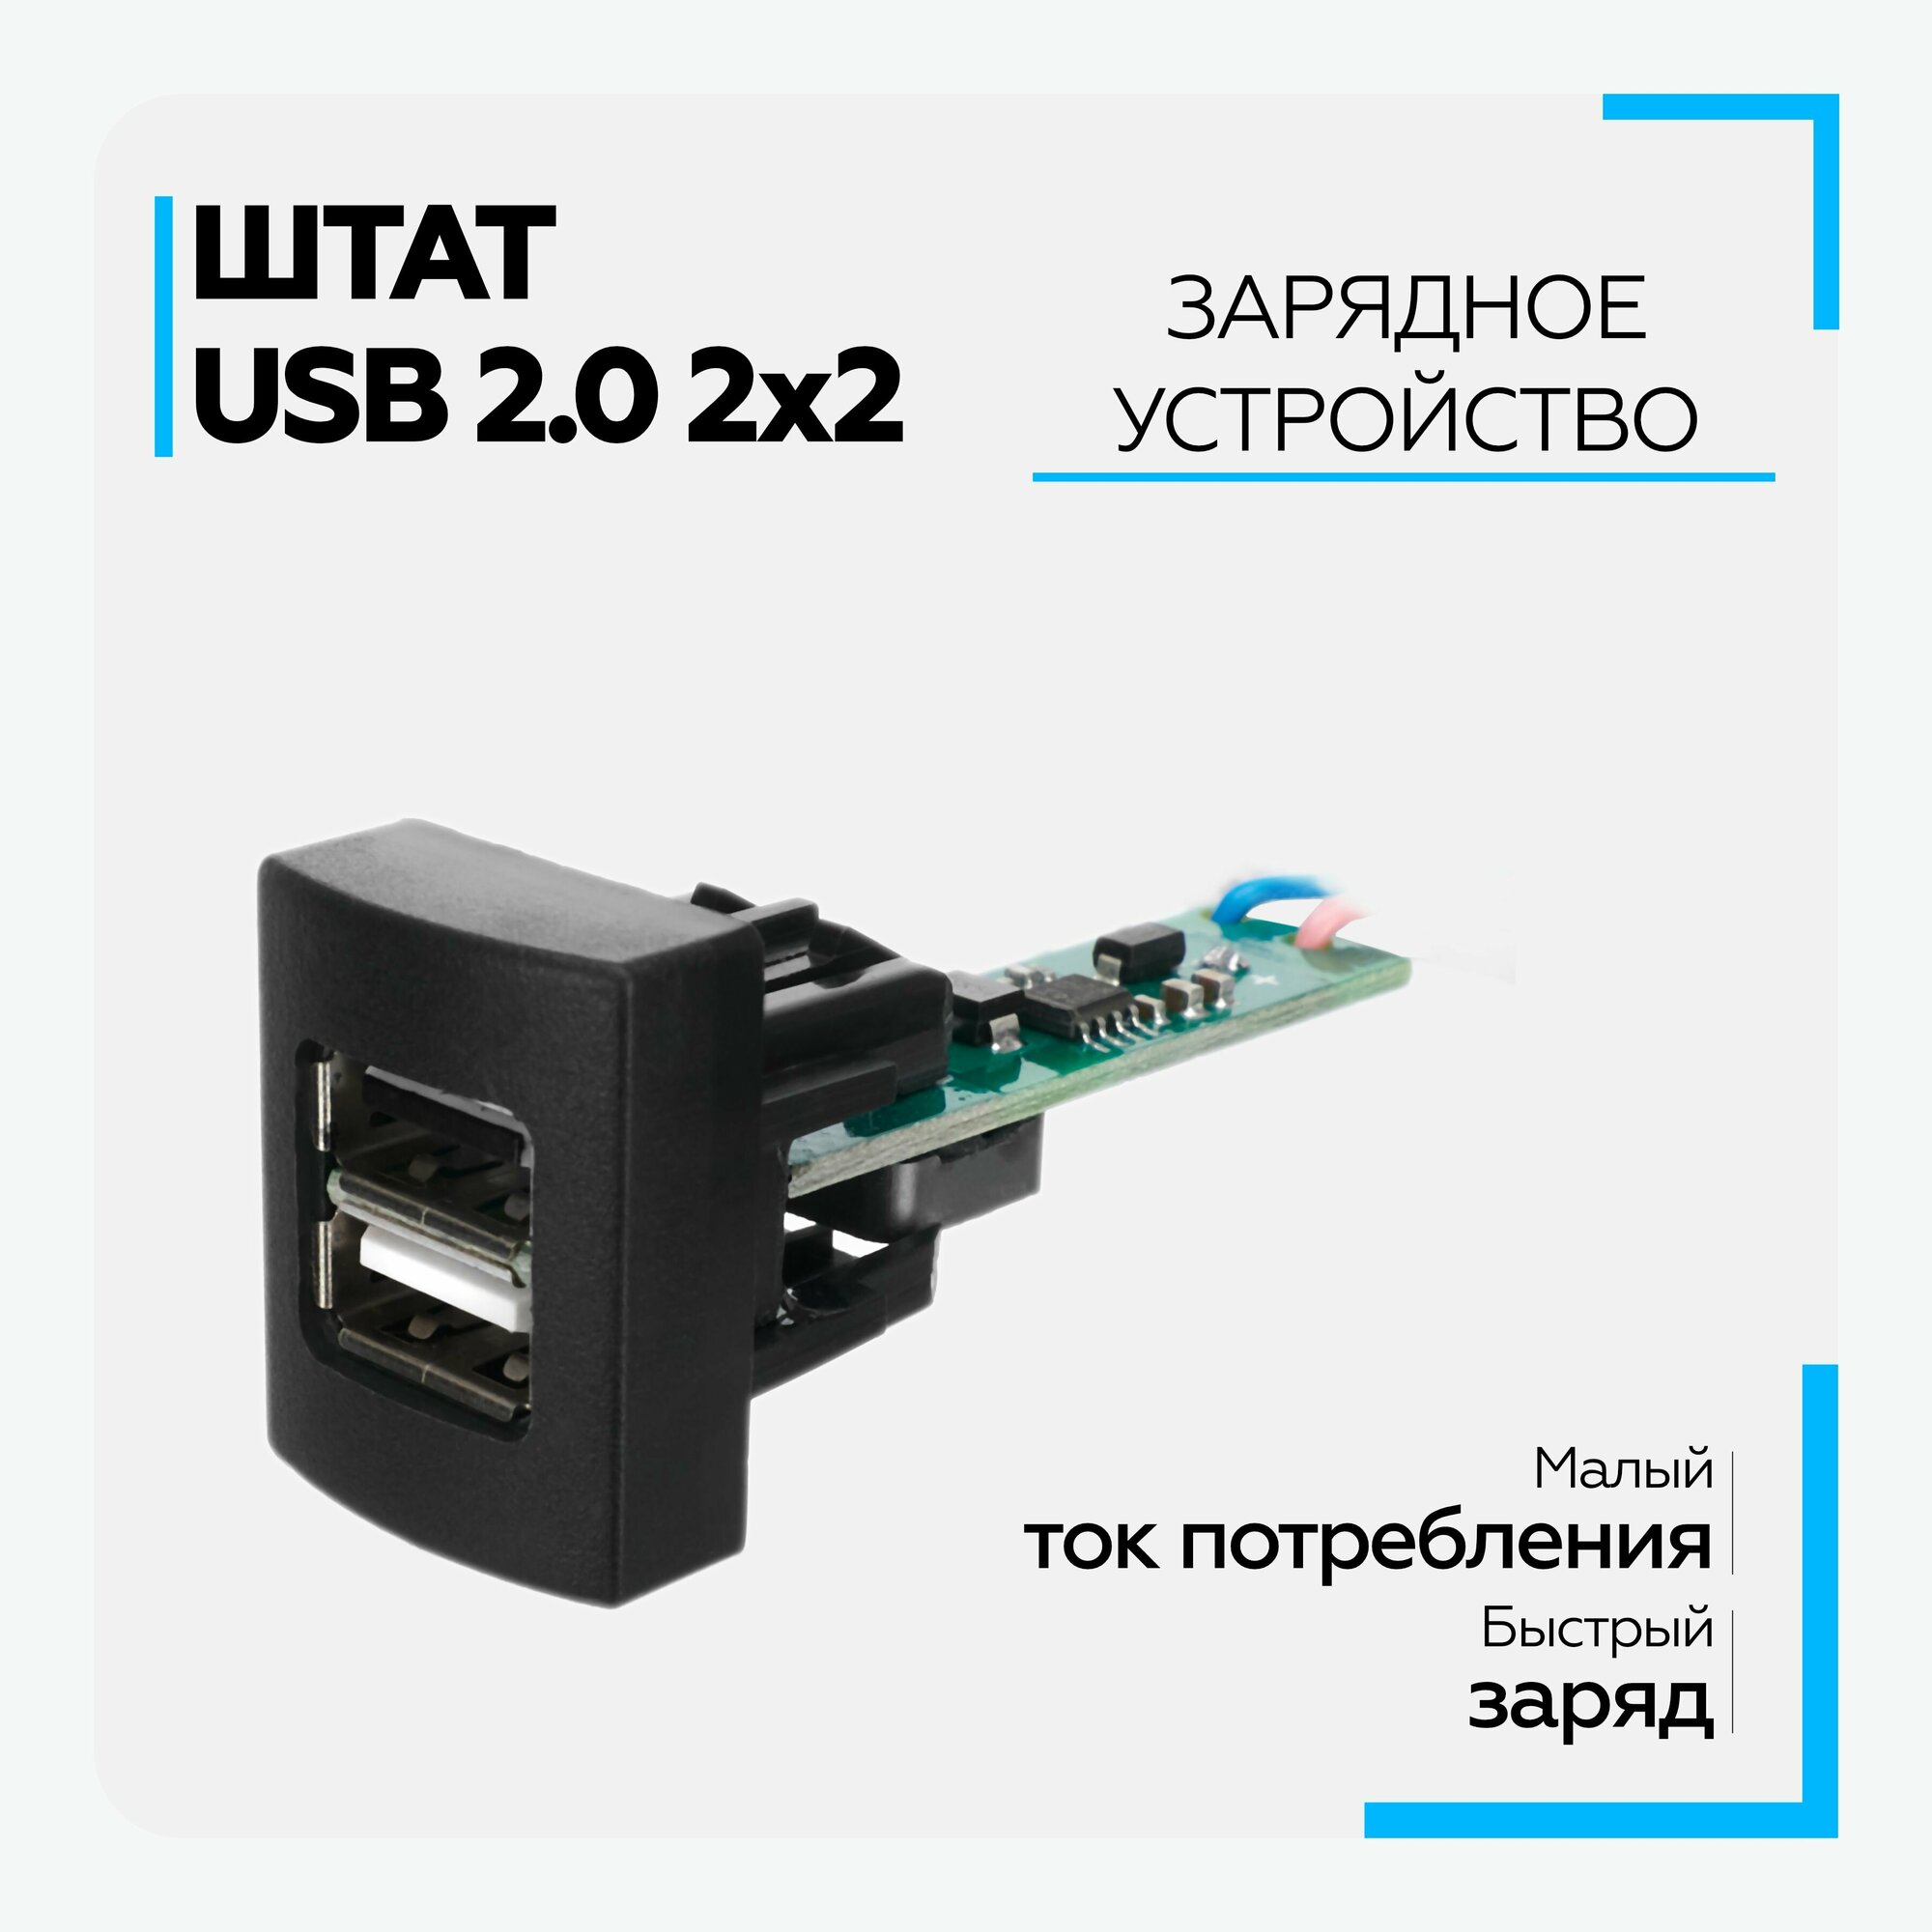 USB 2,0 для автомобилей "Гранта" (Granta) и "Приора" (Priora), Штат, 2 гнезда без кабеля